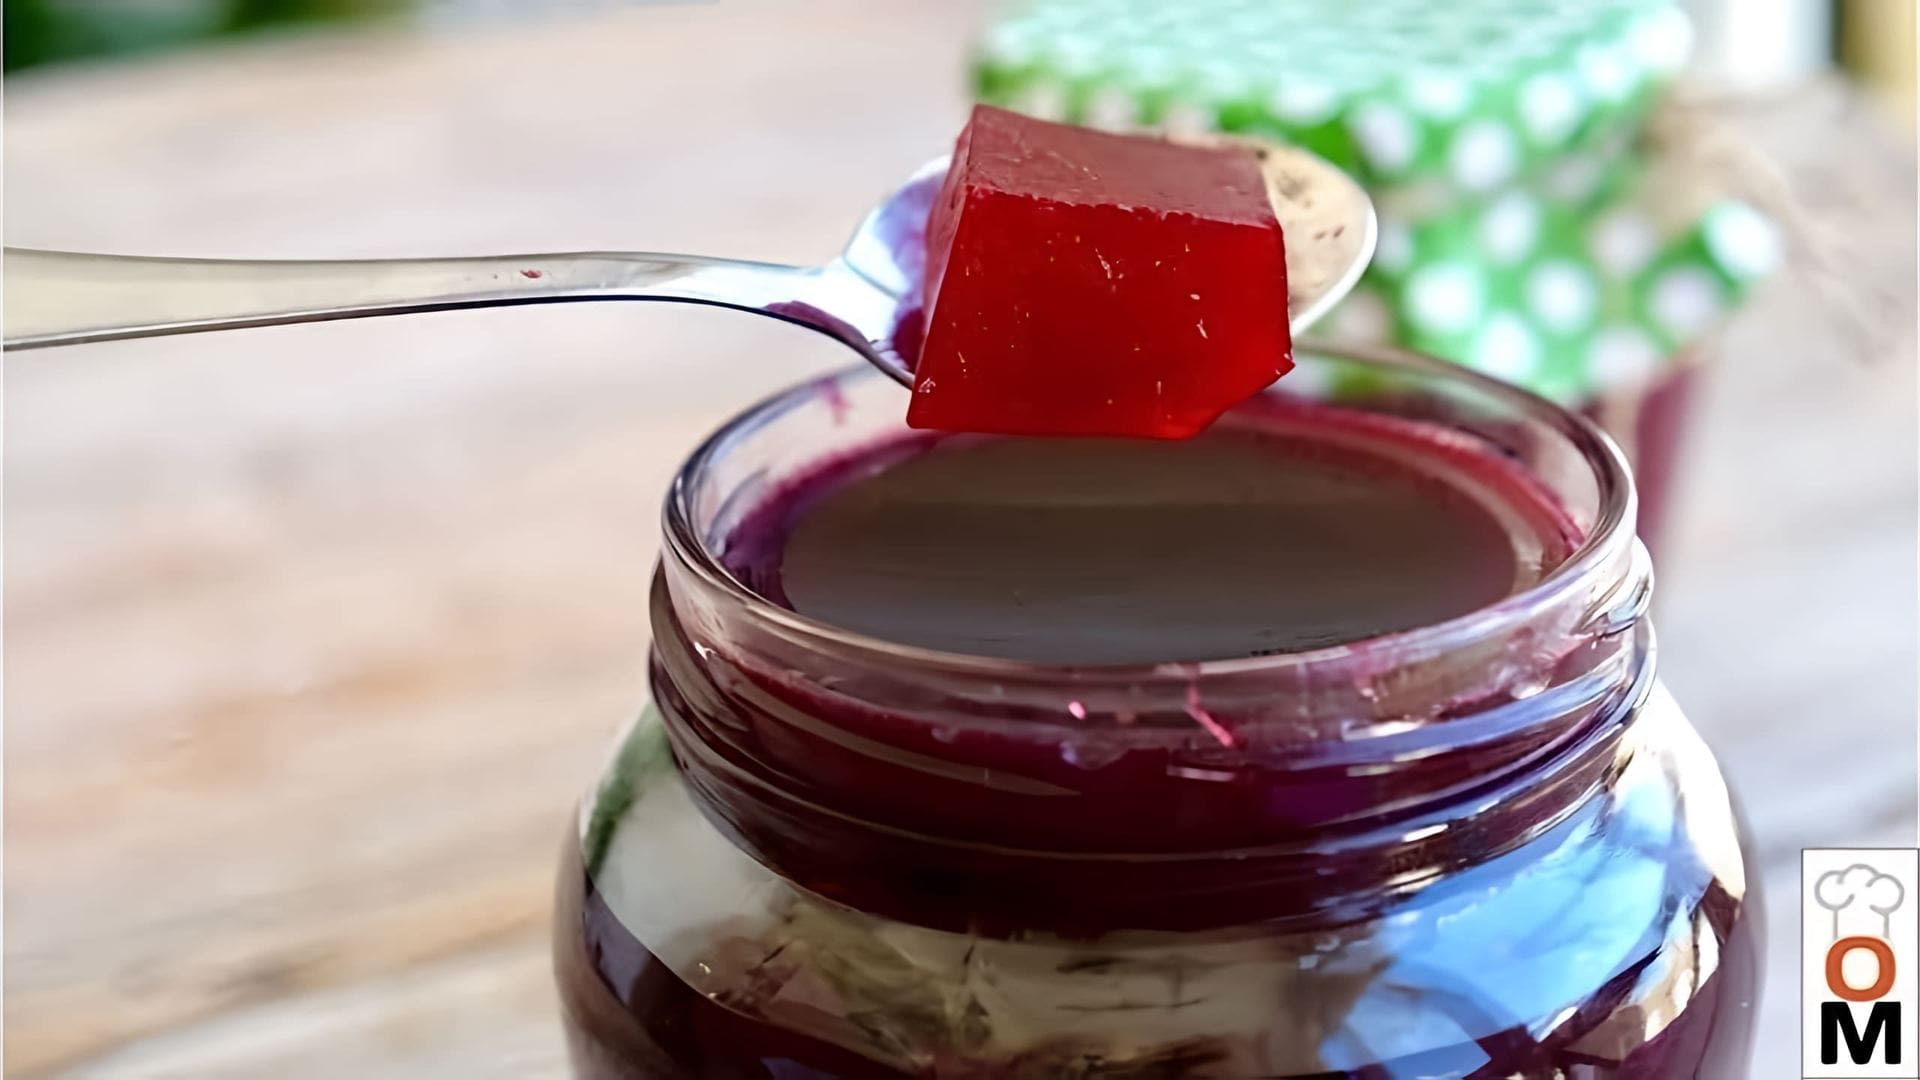 В этом видео демонстрируется процесс приготовления ягодного джема всего за три минуты